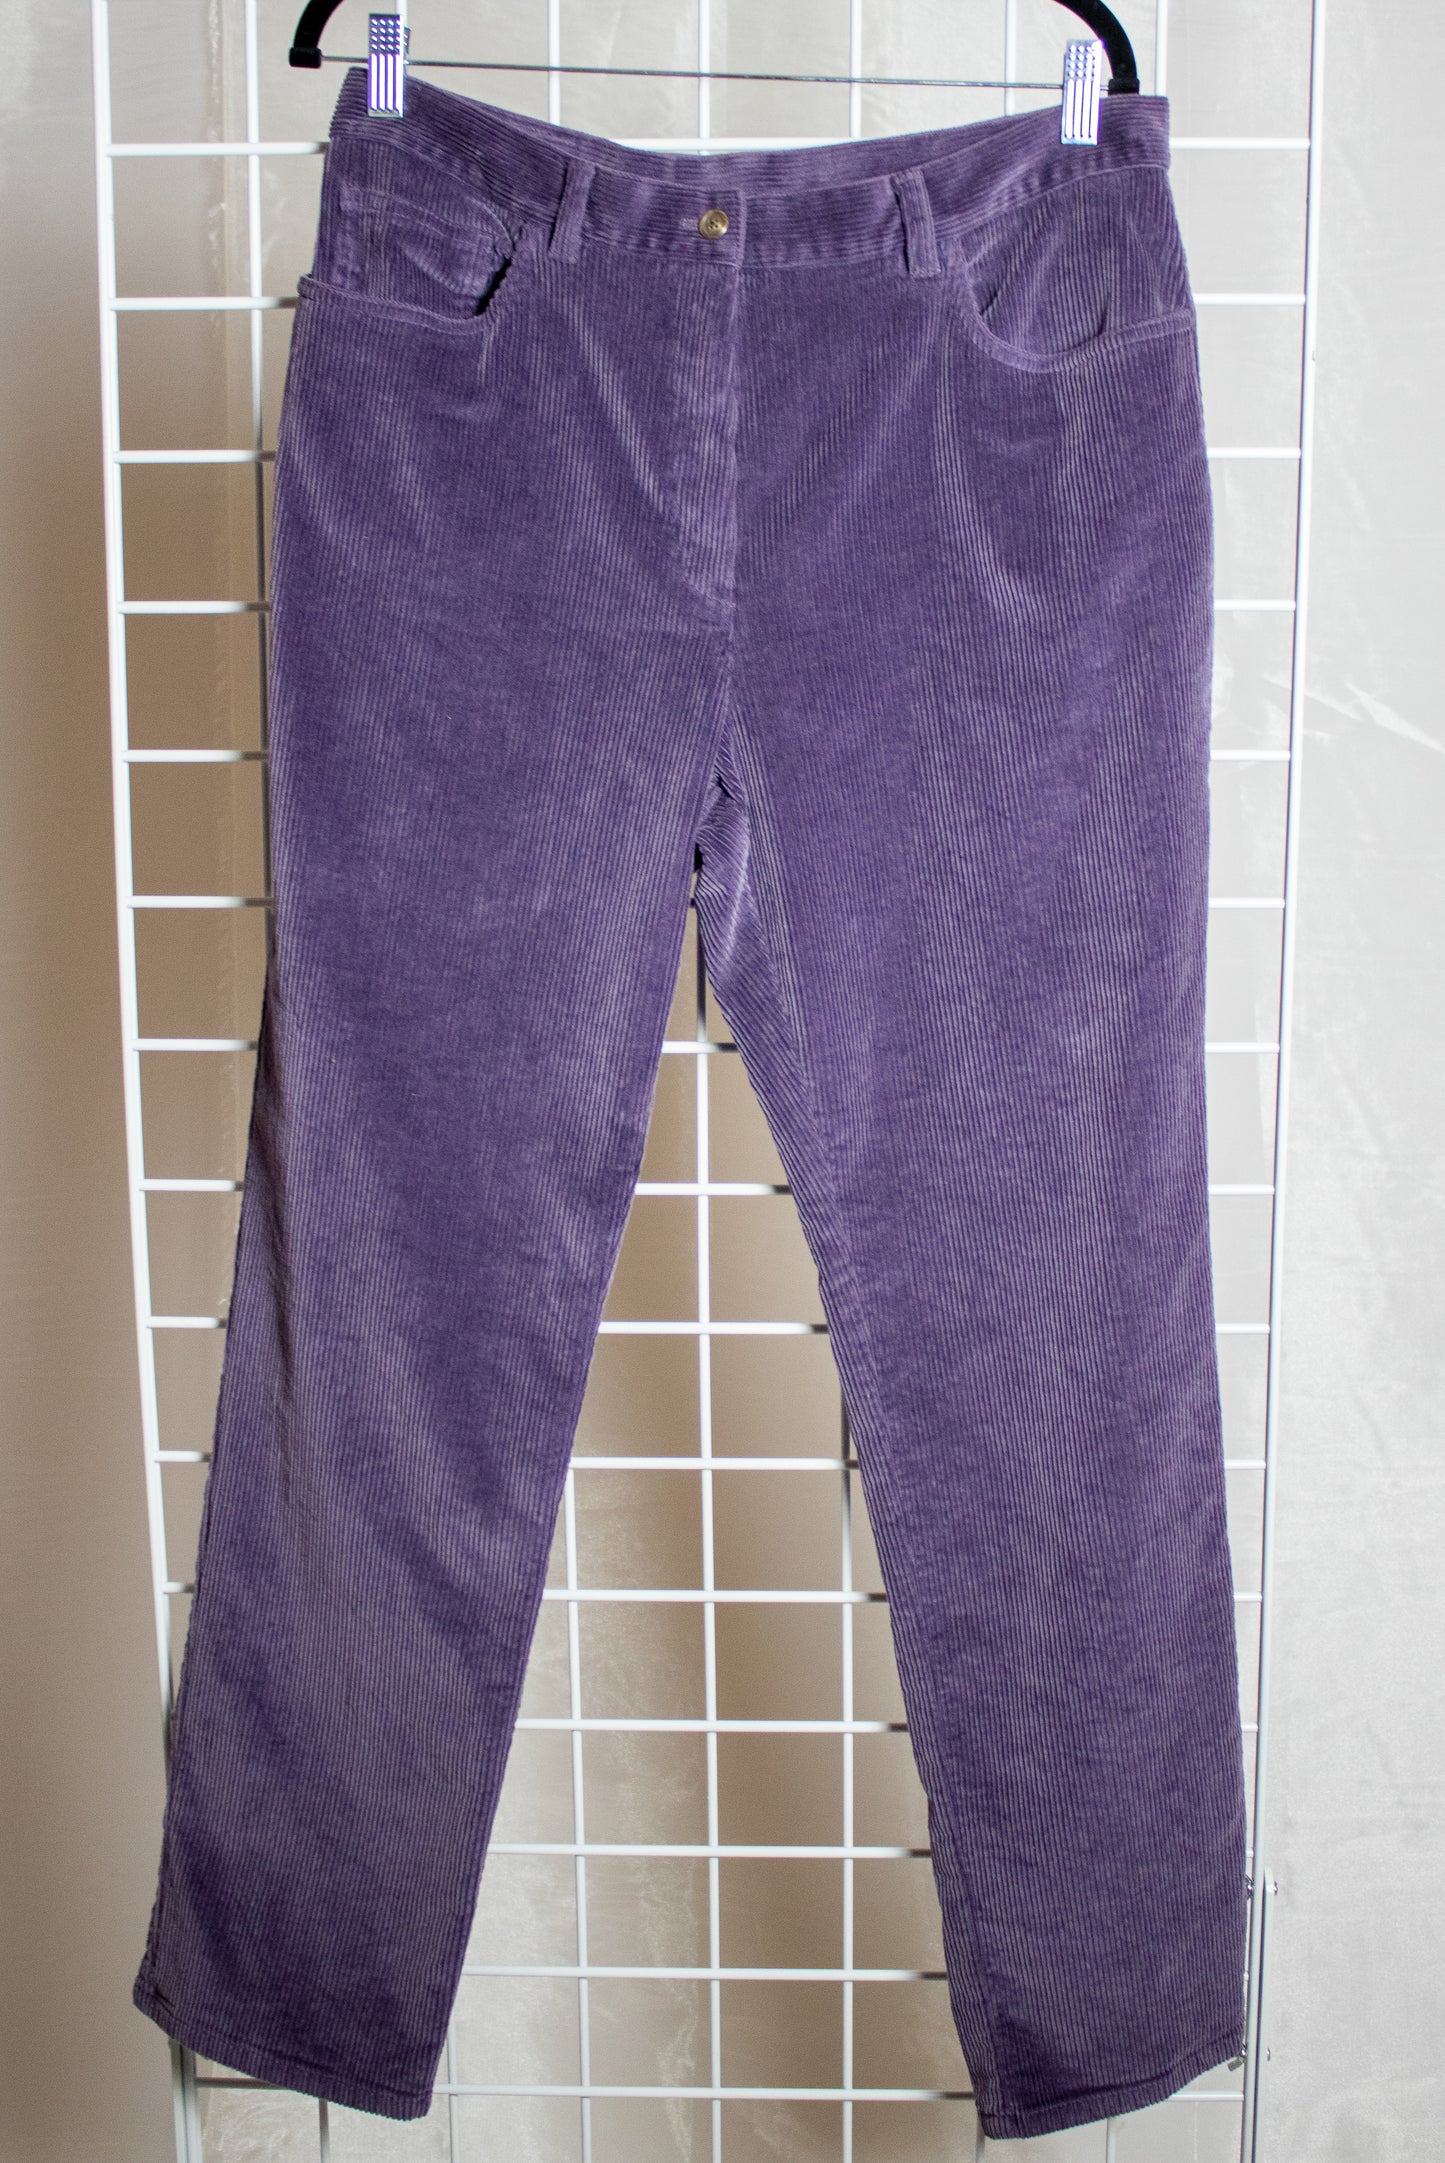 Purple Ralph Lauren Corduroy Pants - 34x30